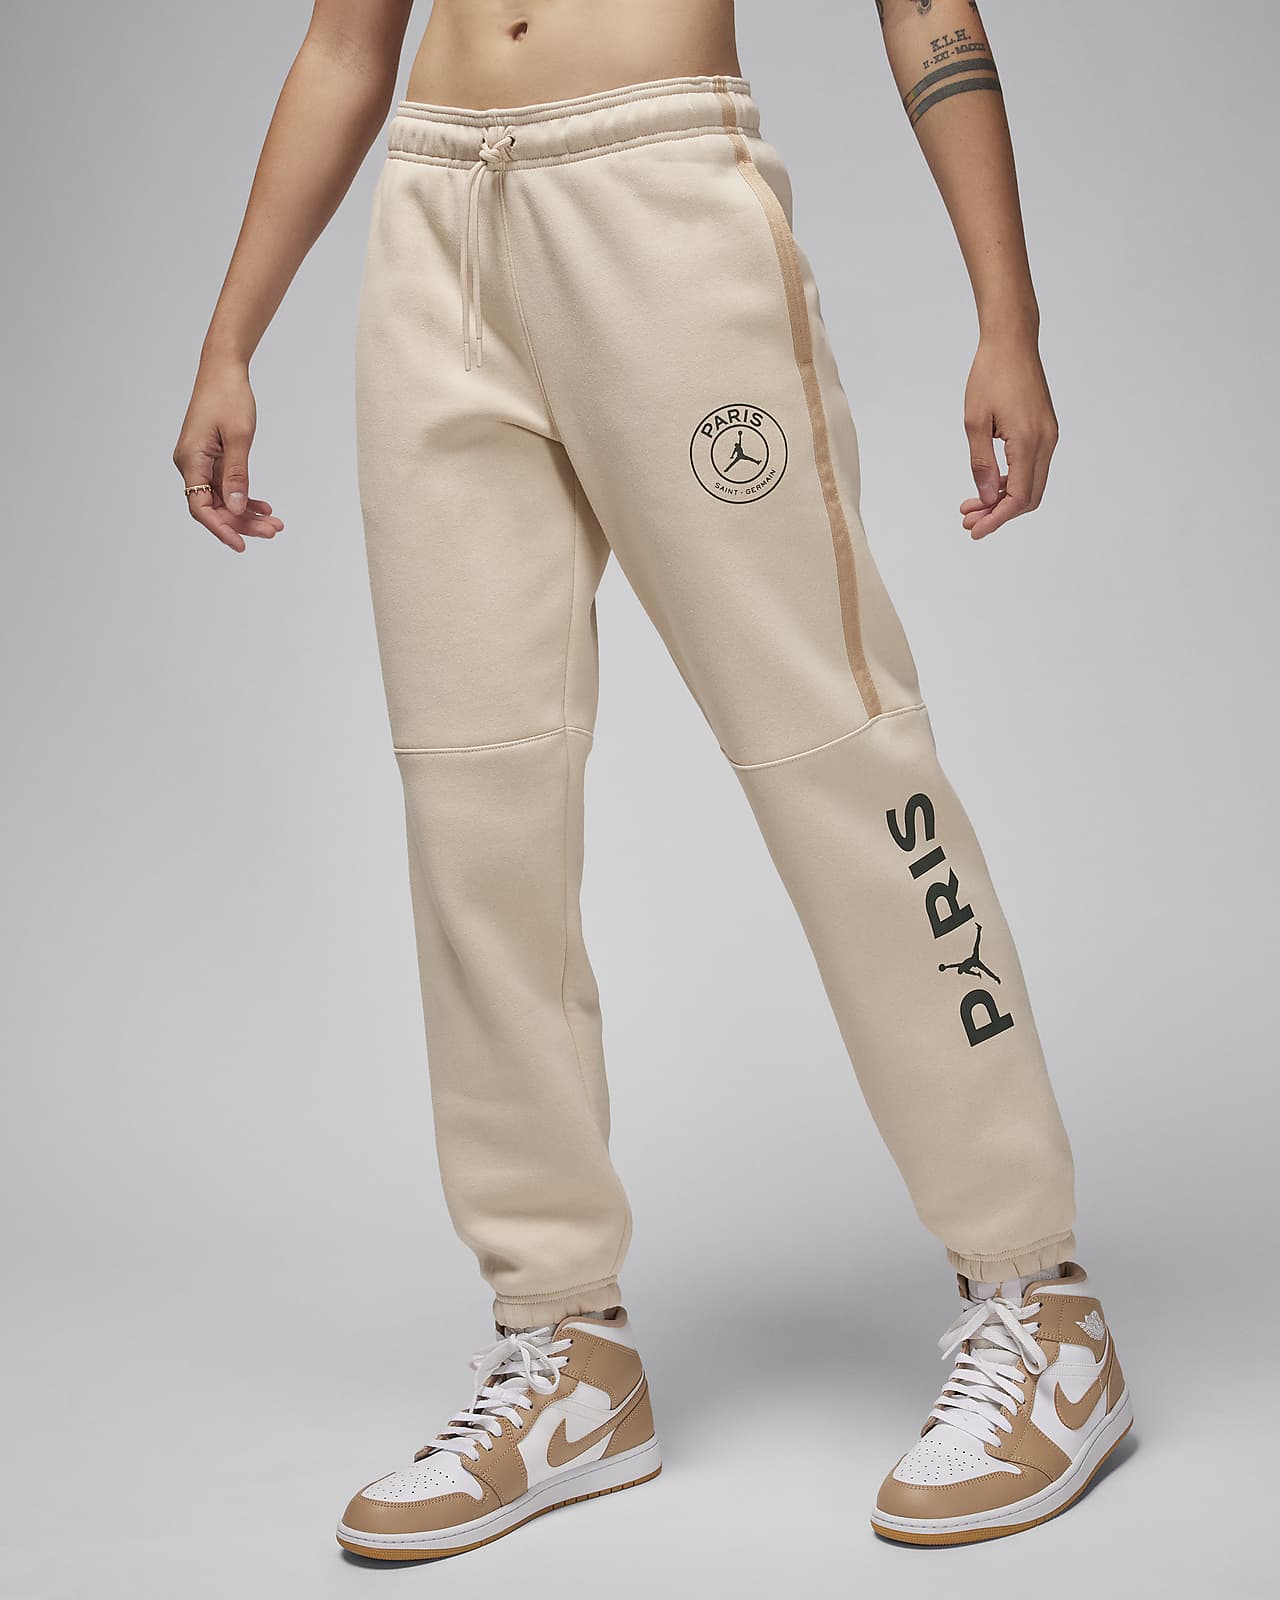 Pants de fútbol con gráfico Jordan para mujer Paris Saint-Germain Brooklyn Fleece